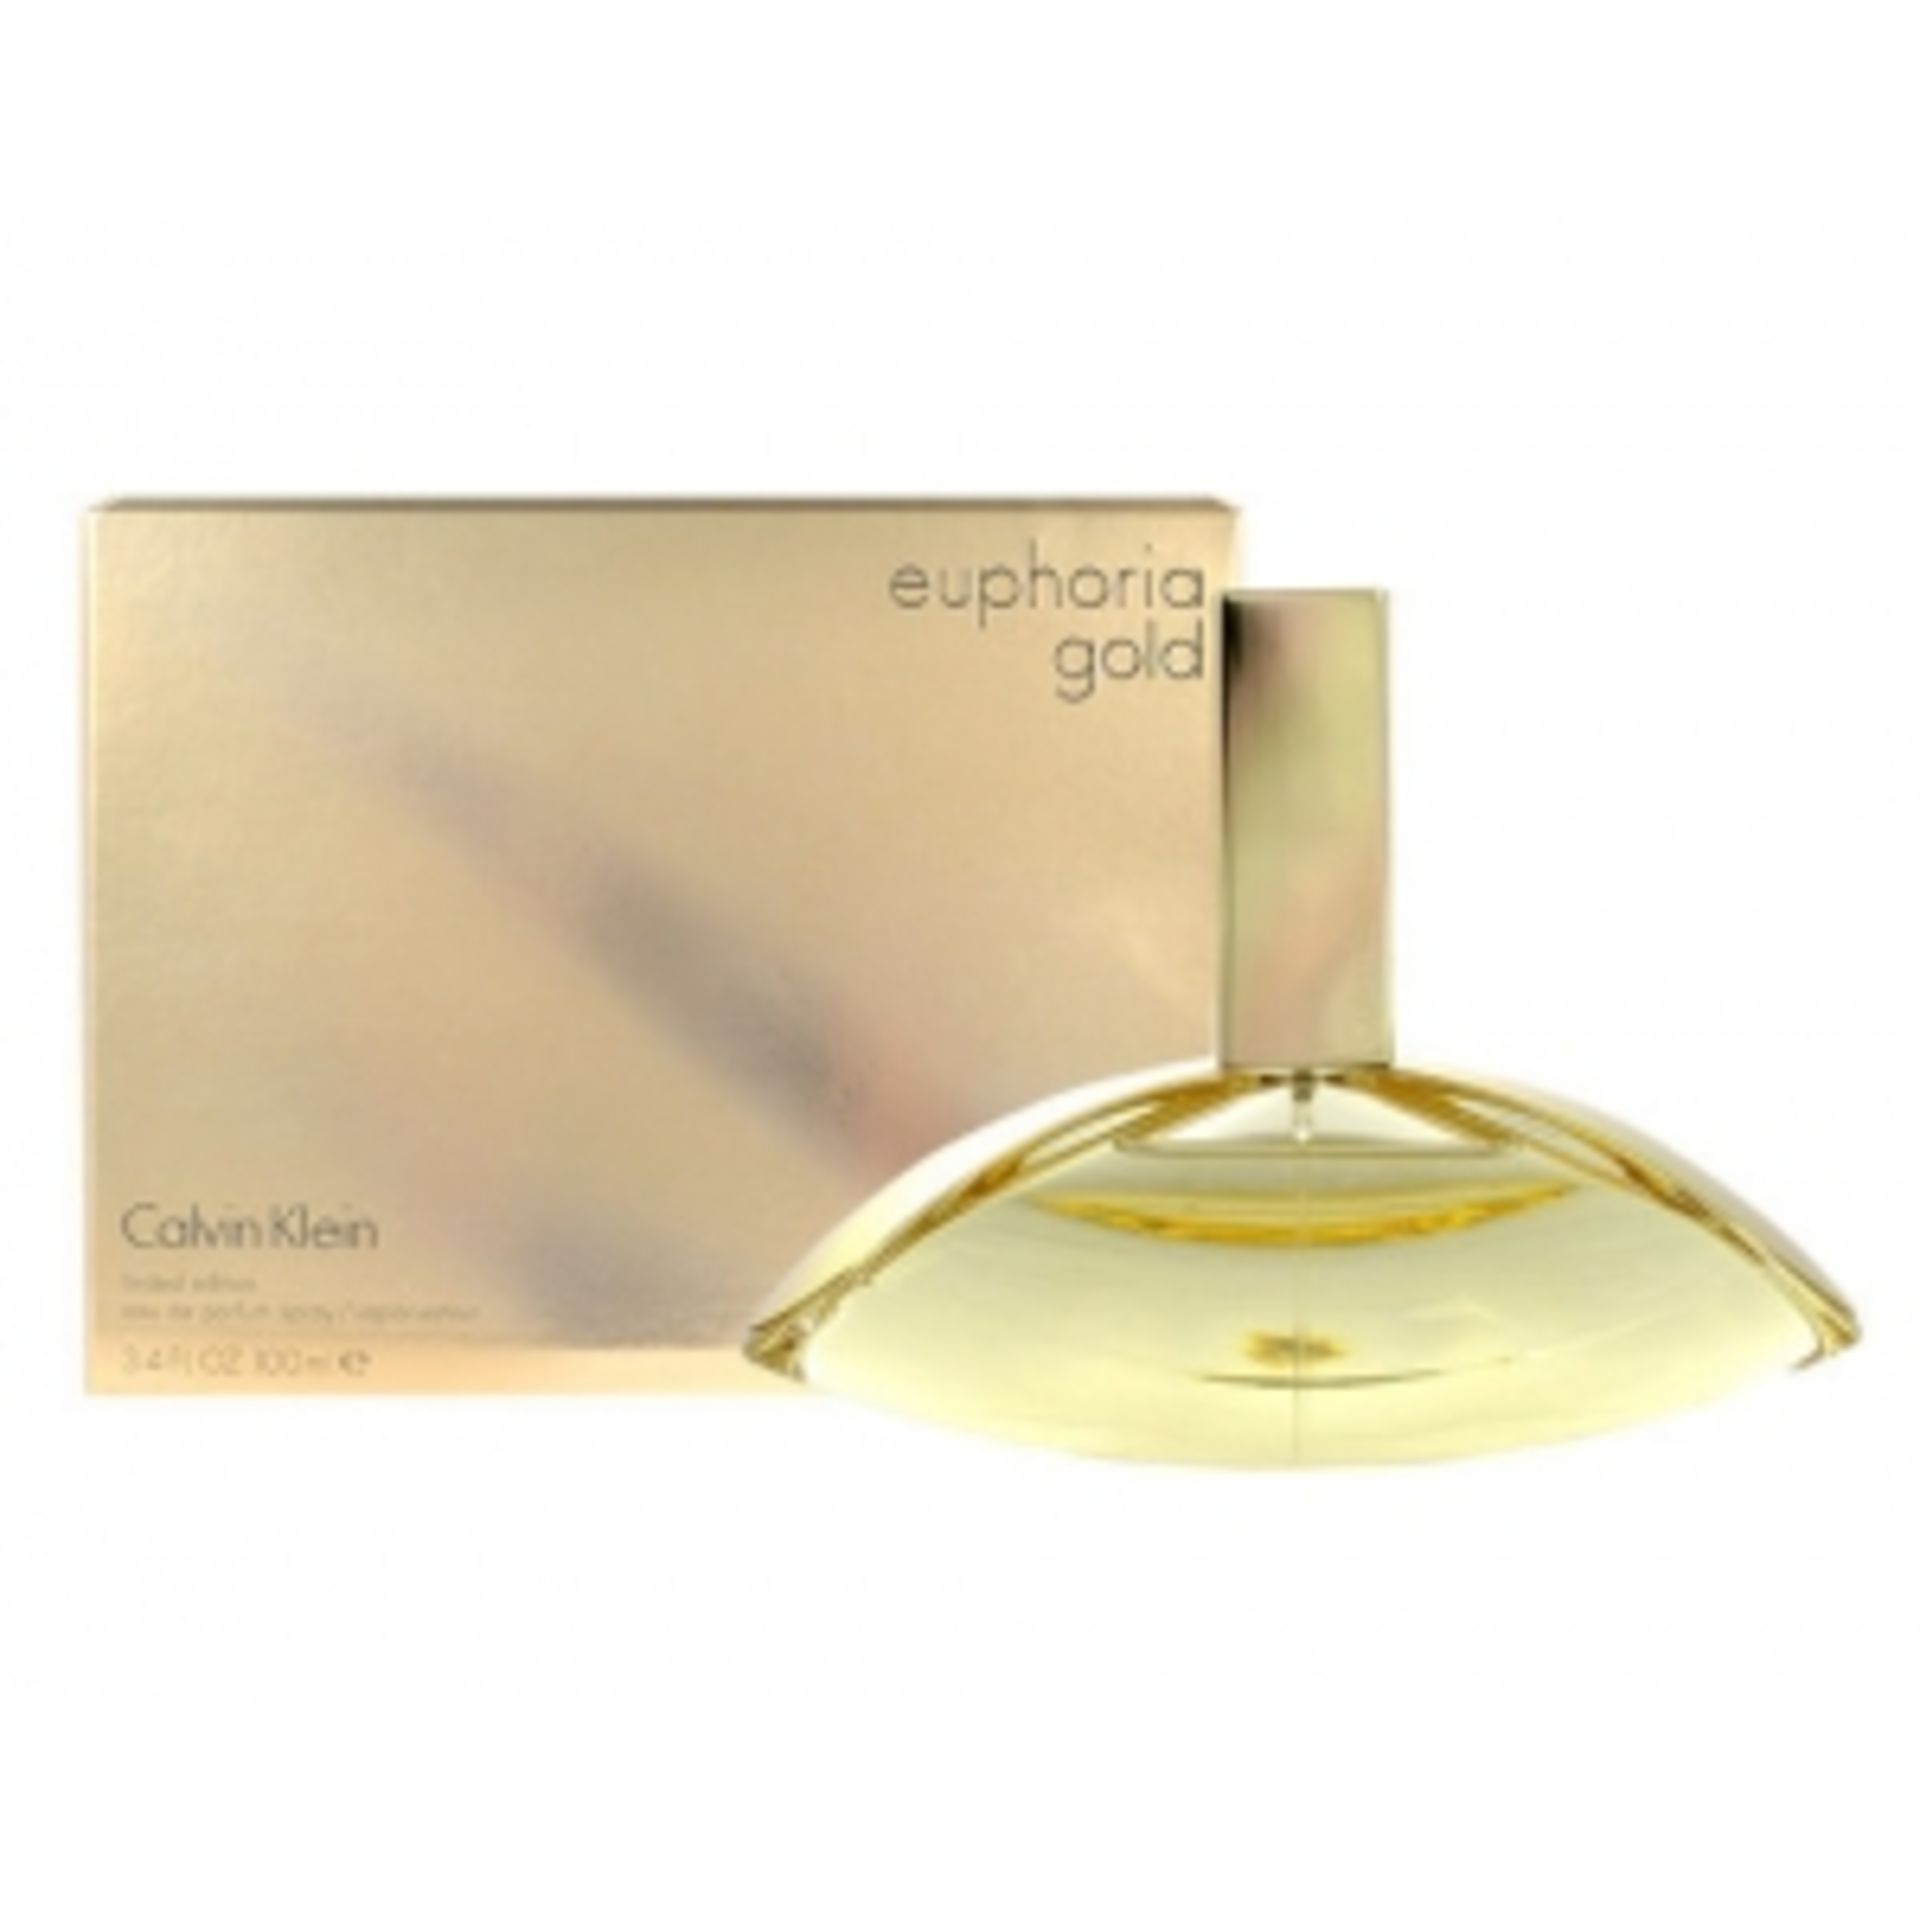 V Brand New Calvin Klein 50ml Euphoria Gold 50ml Eau De Parfum Spray RRP £52.00 Fragrance Direct £